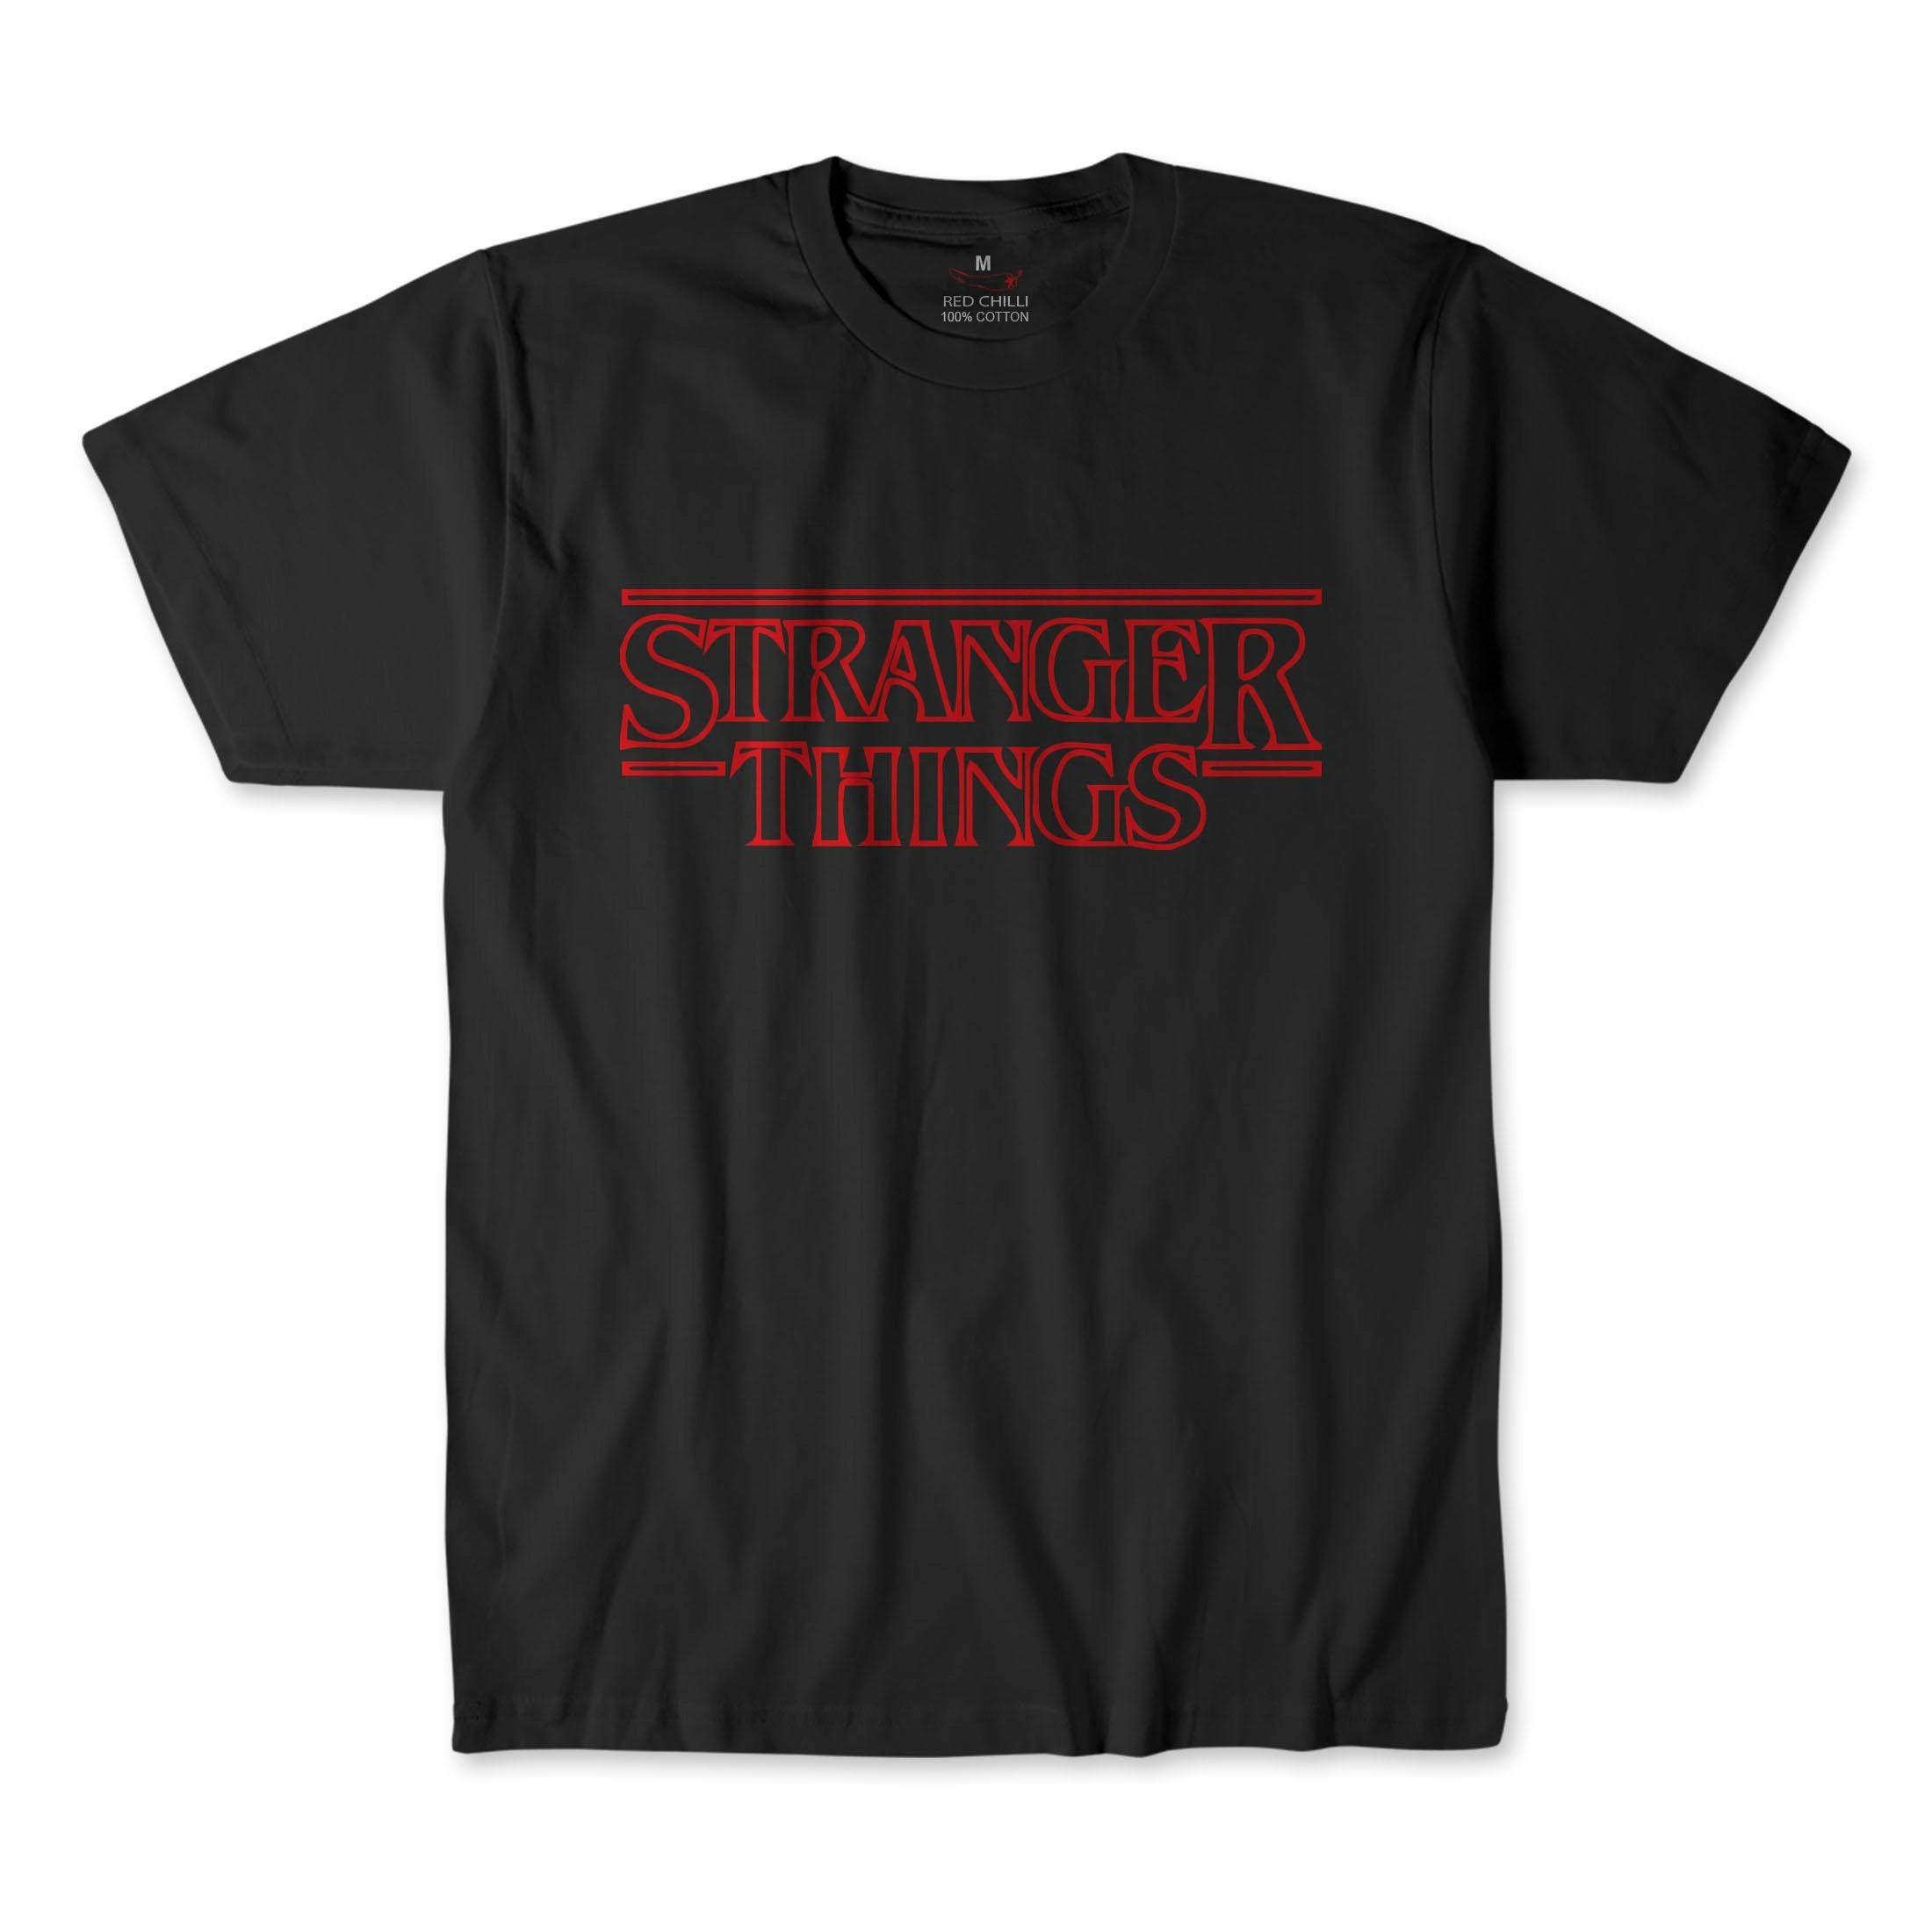 Stranger Things Inspired T-shirt